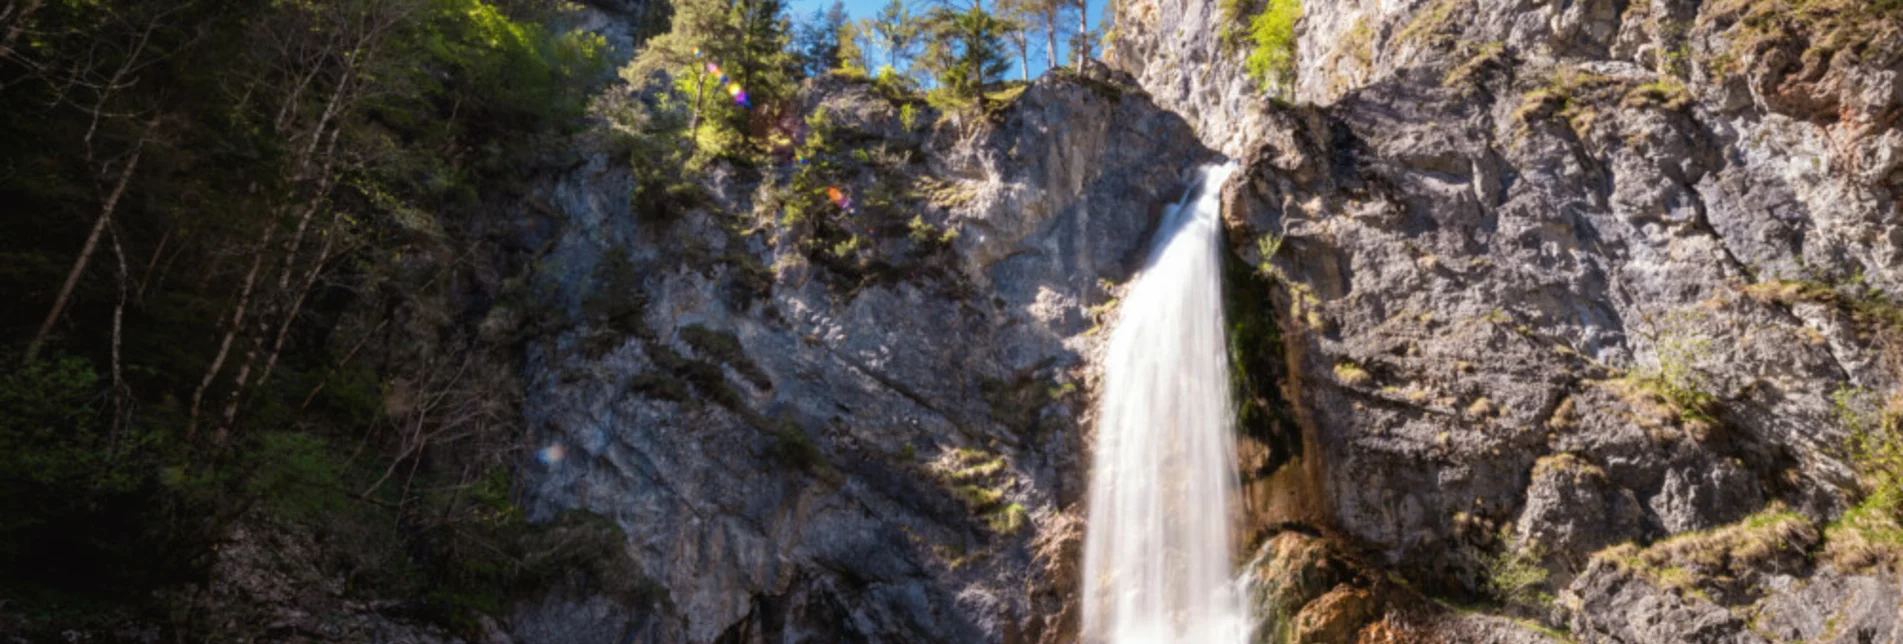 Nordic Walking Bewegungsarena - Salza Wasserfallrunde (SM 4) - Touren-Impression #1 | © Erlebnisregion Schladming-Dachstein